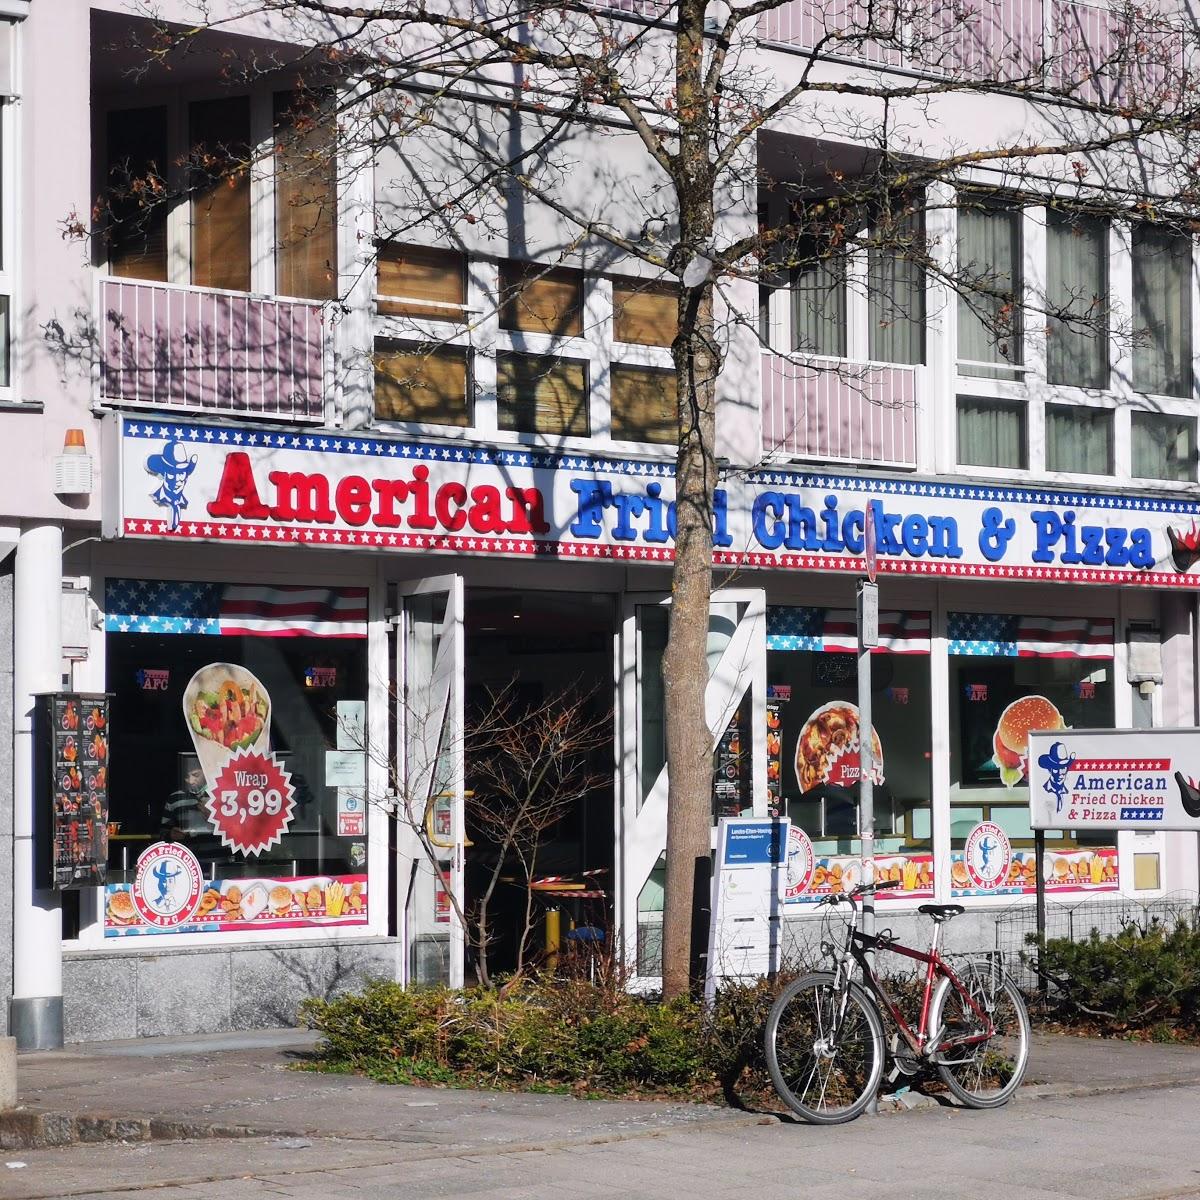 Restaurant "American Fried Chicken München" in München